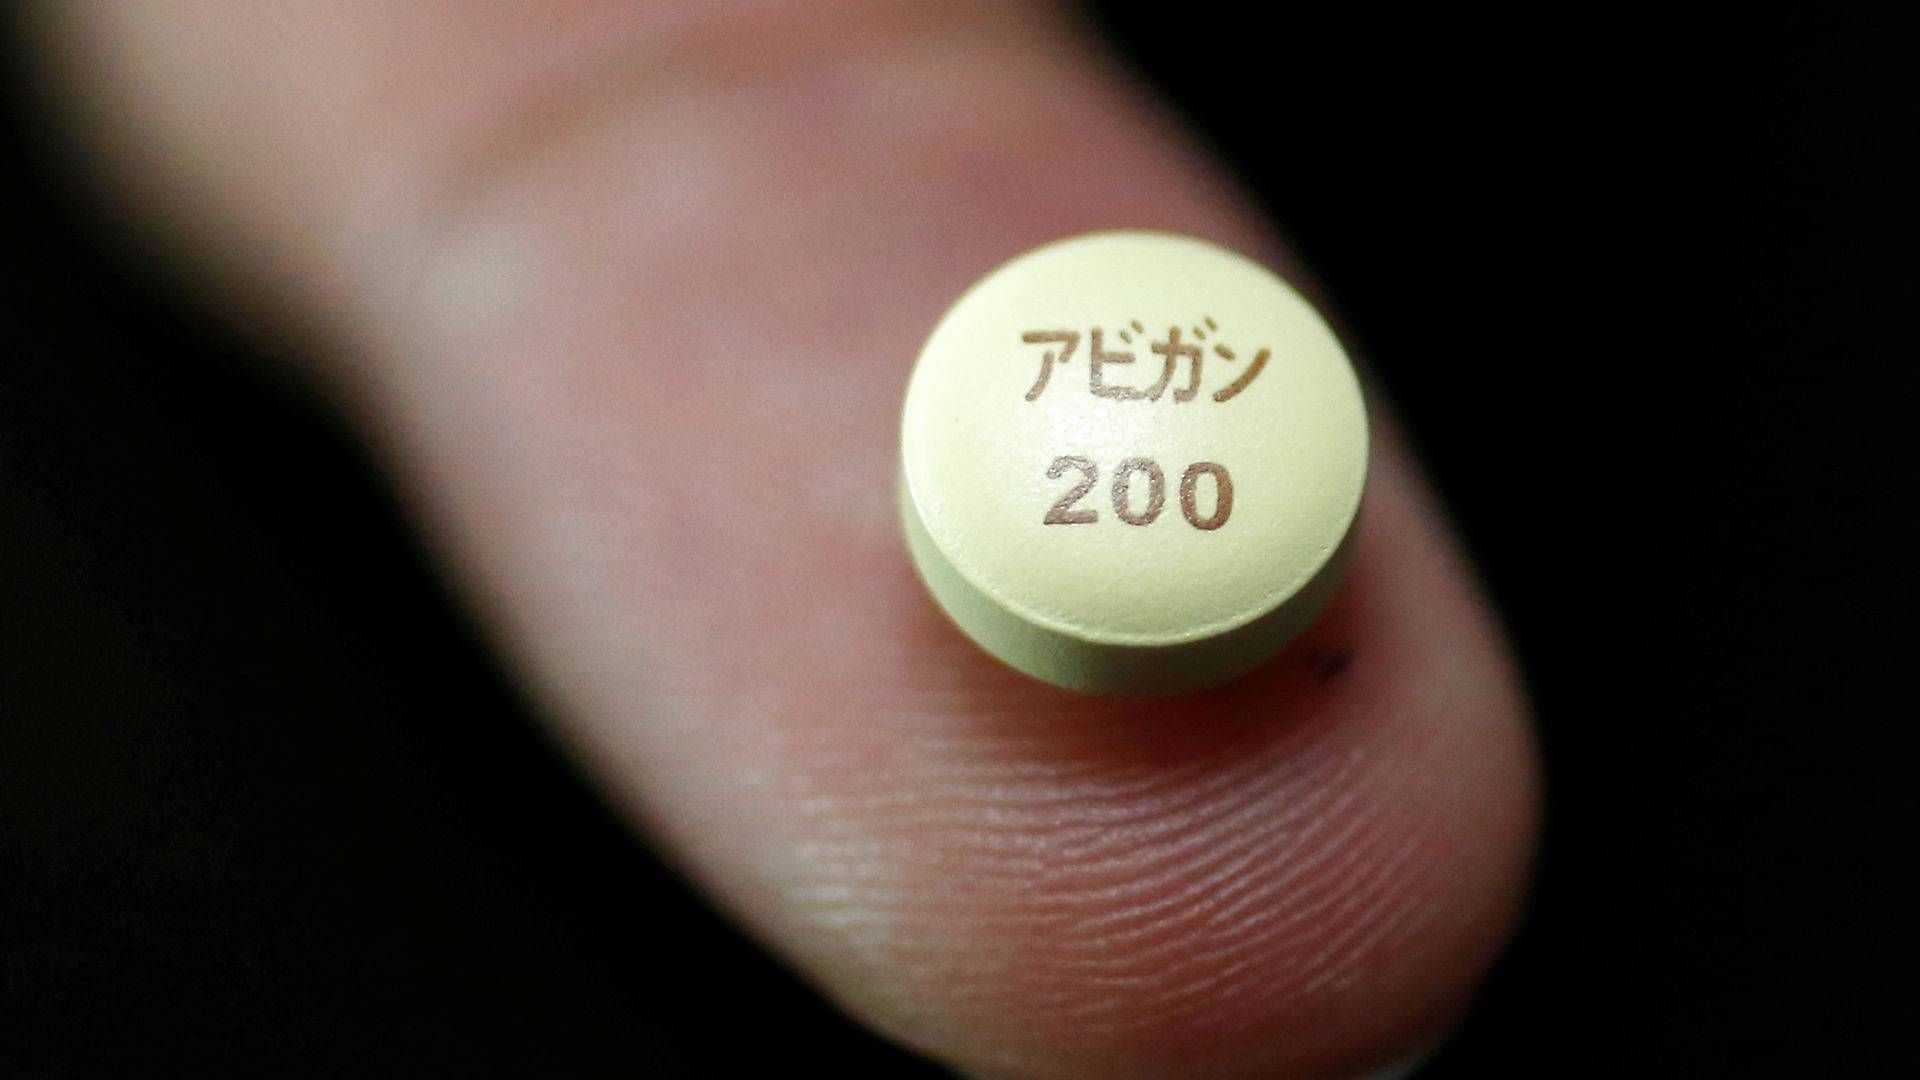 Fuijfilm Toyama Chemicals influenzamiddel Avigan har fra starten af pandemien været en kandidat til et lægemiddel mod covid-19. | Foto: Issei Kato / Reuters / Ritzau Scanpix